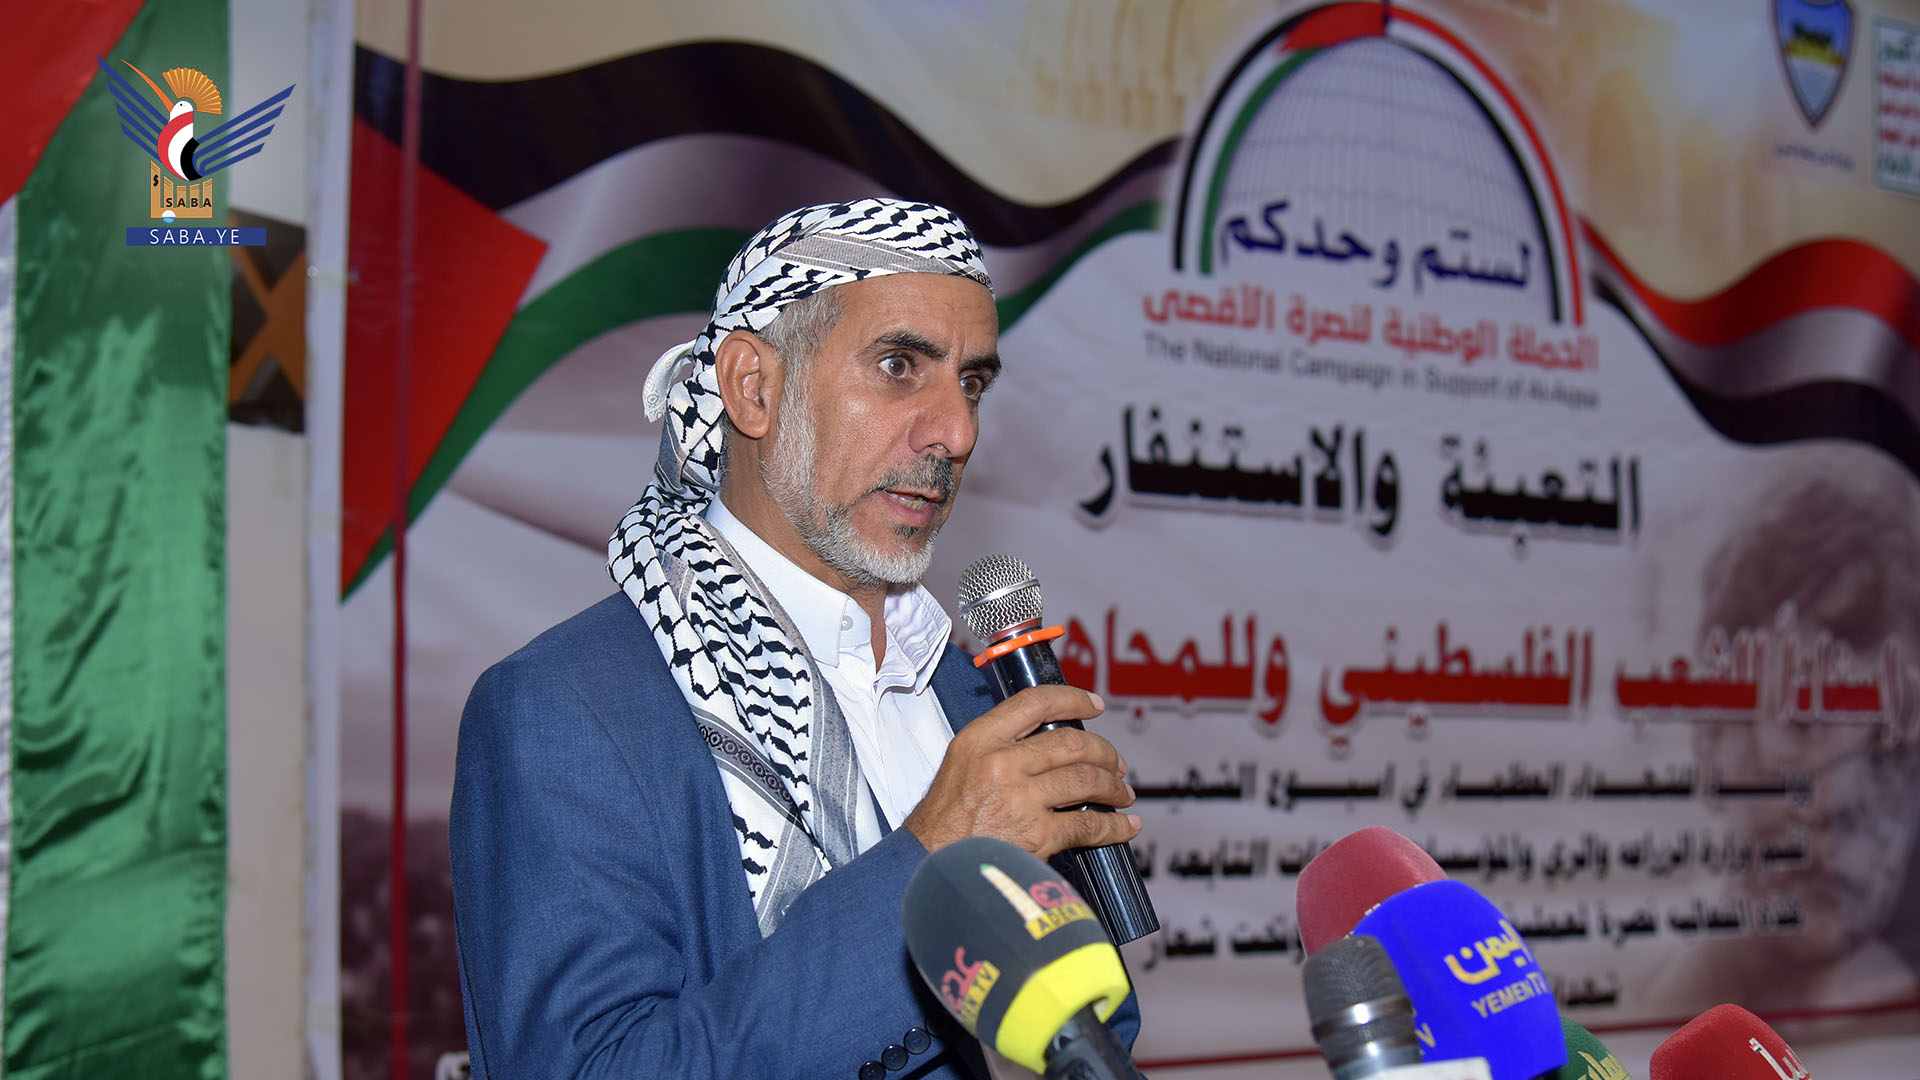 وزارة الزراعة تنظم فعالية تضامنية مع الشعب والمقاومة الفلسطينية